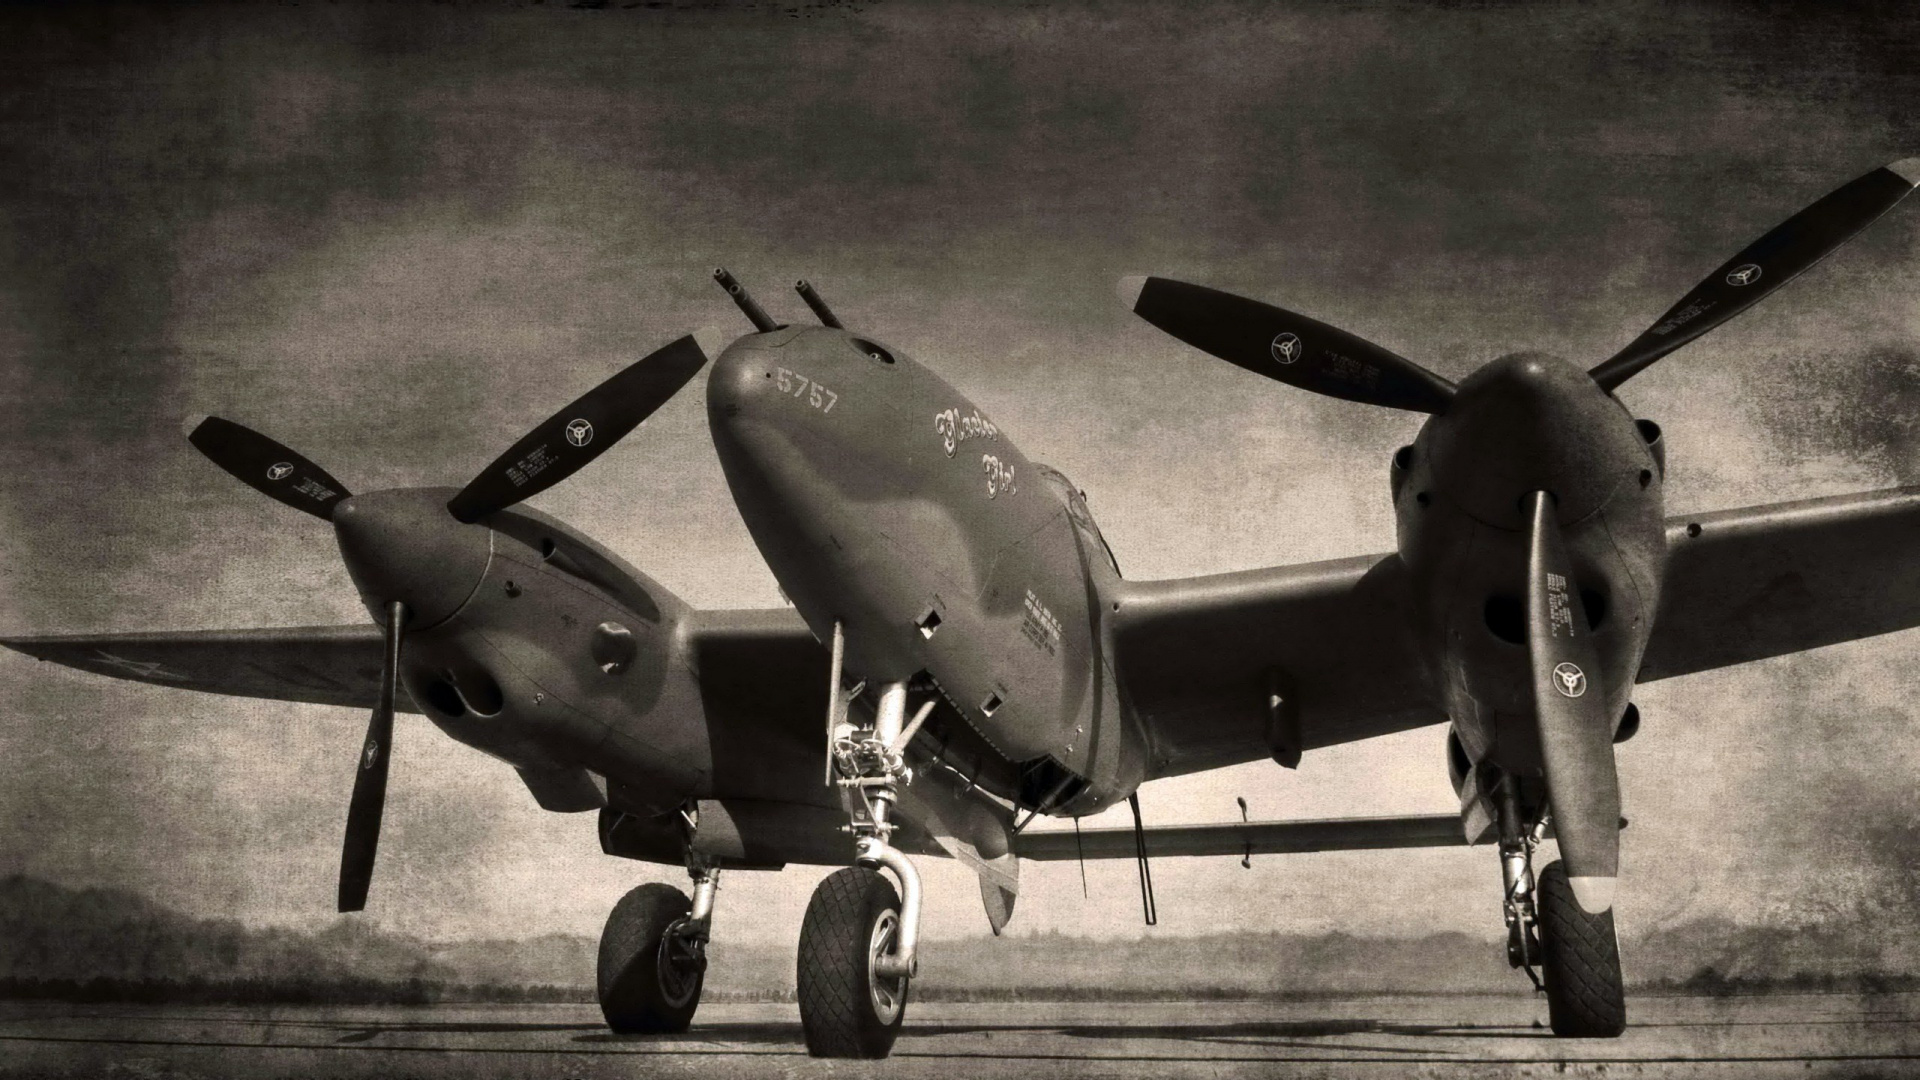 洛克希德 P-38 闪电, 航空, 螺旋桨, 军用飞机, 黑色和白色的 壁纸 1920x1080 允许